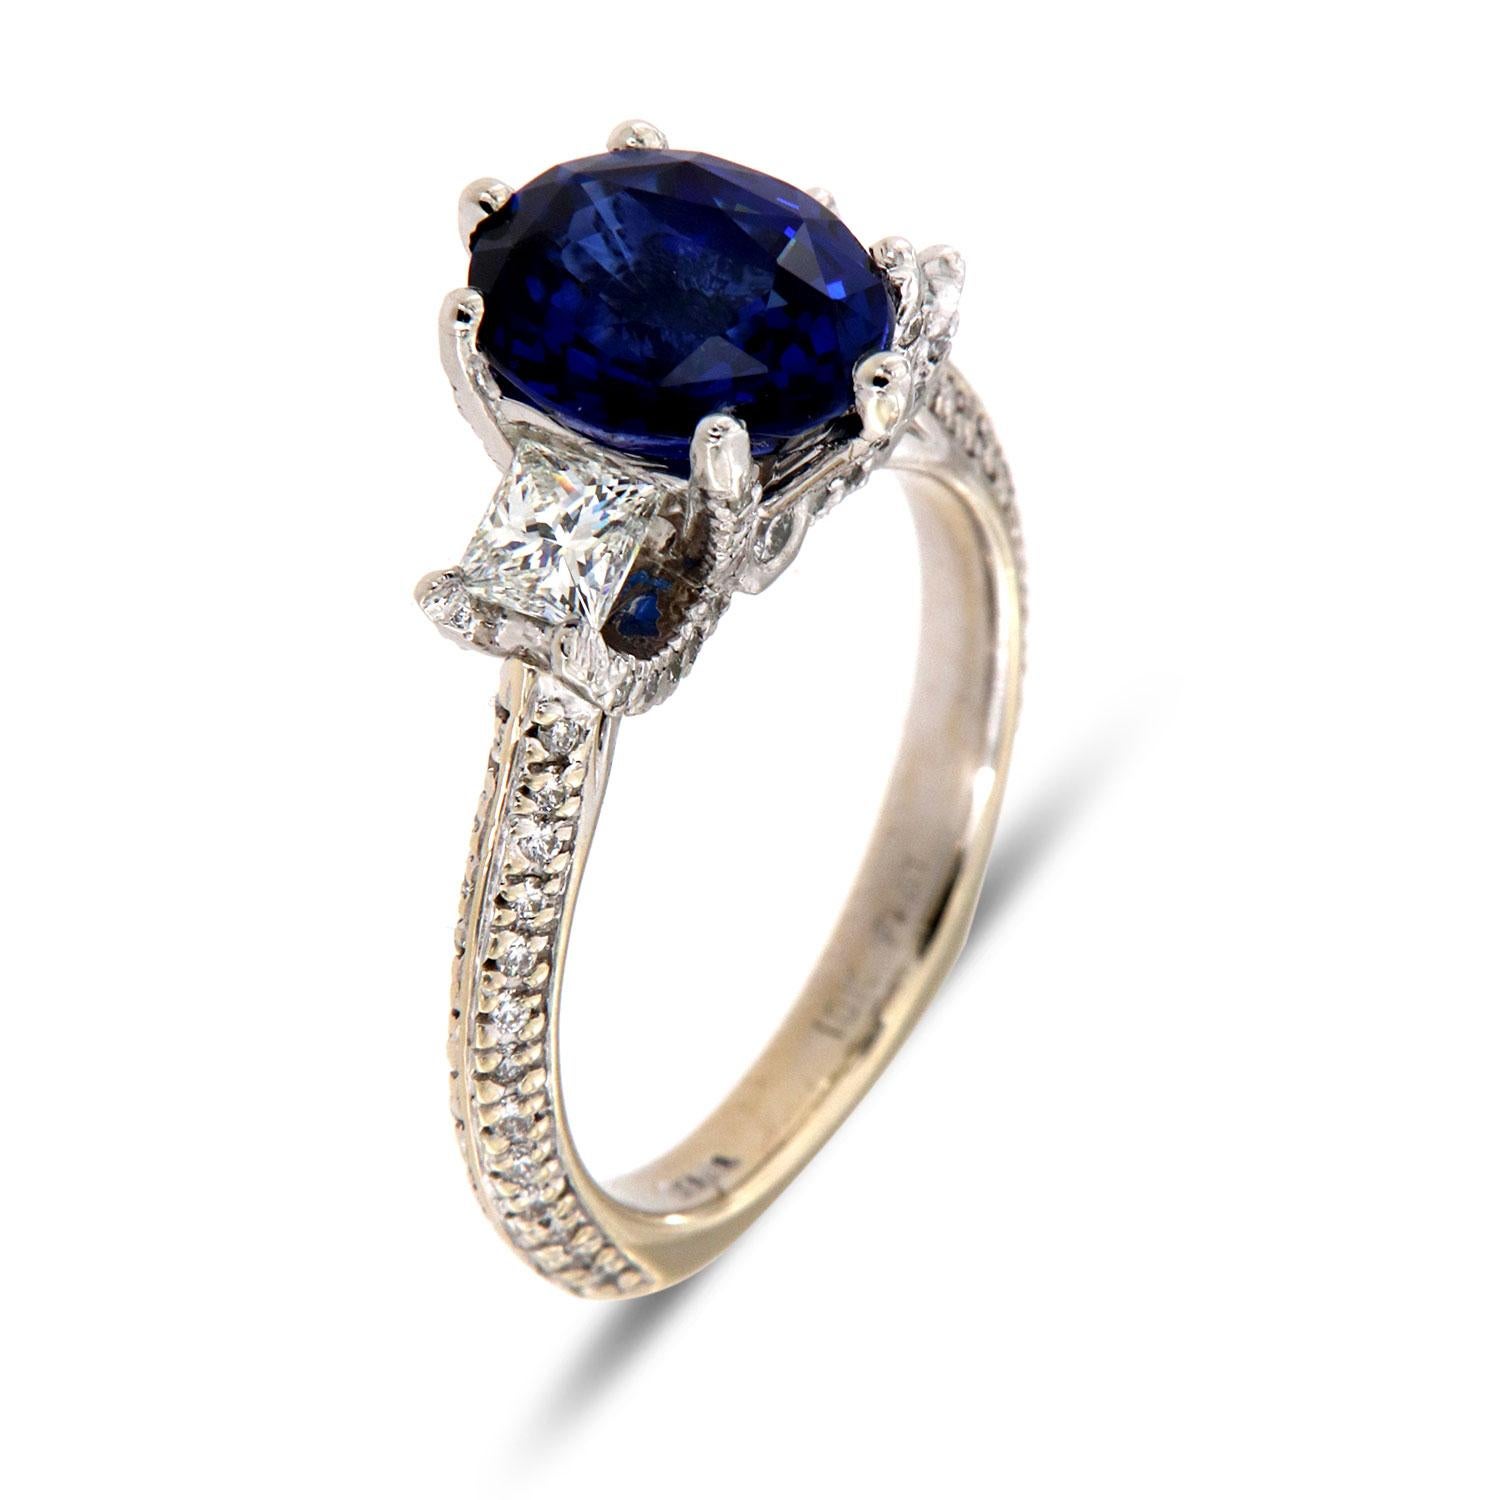 Diese außergewöhnliche  18K Weißgold und Platin Ring mit einem Top Qualität 3,54 - Karat Blau Oval Form natürlichen Saphir  GIA-Zertifikat:2205223812 flankiert von zwei (2) perfekt aufeinander abgestimmten Diamanten in Prinzessinnenform, die in